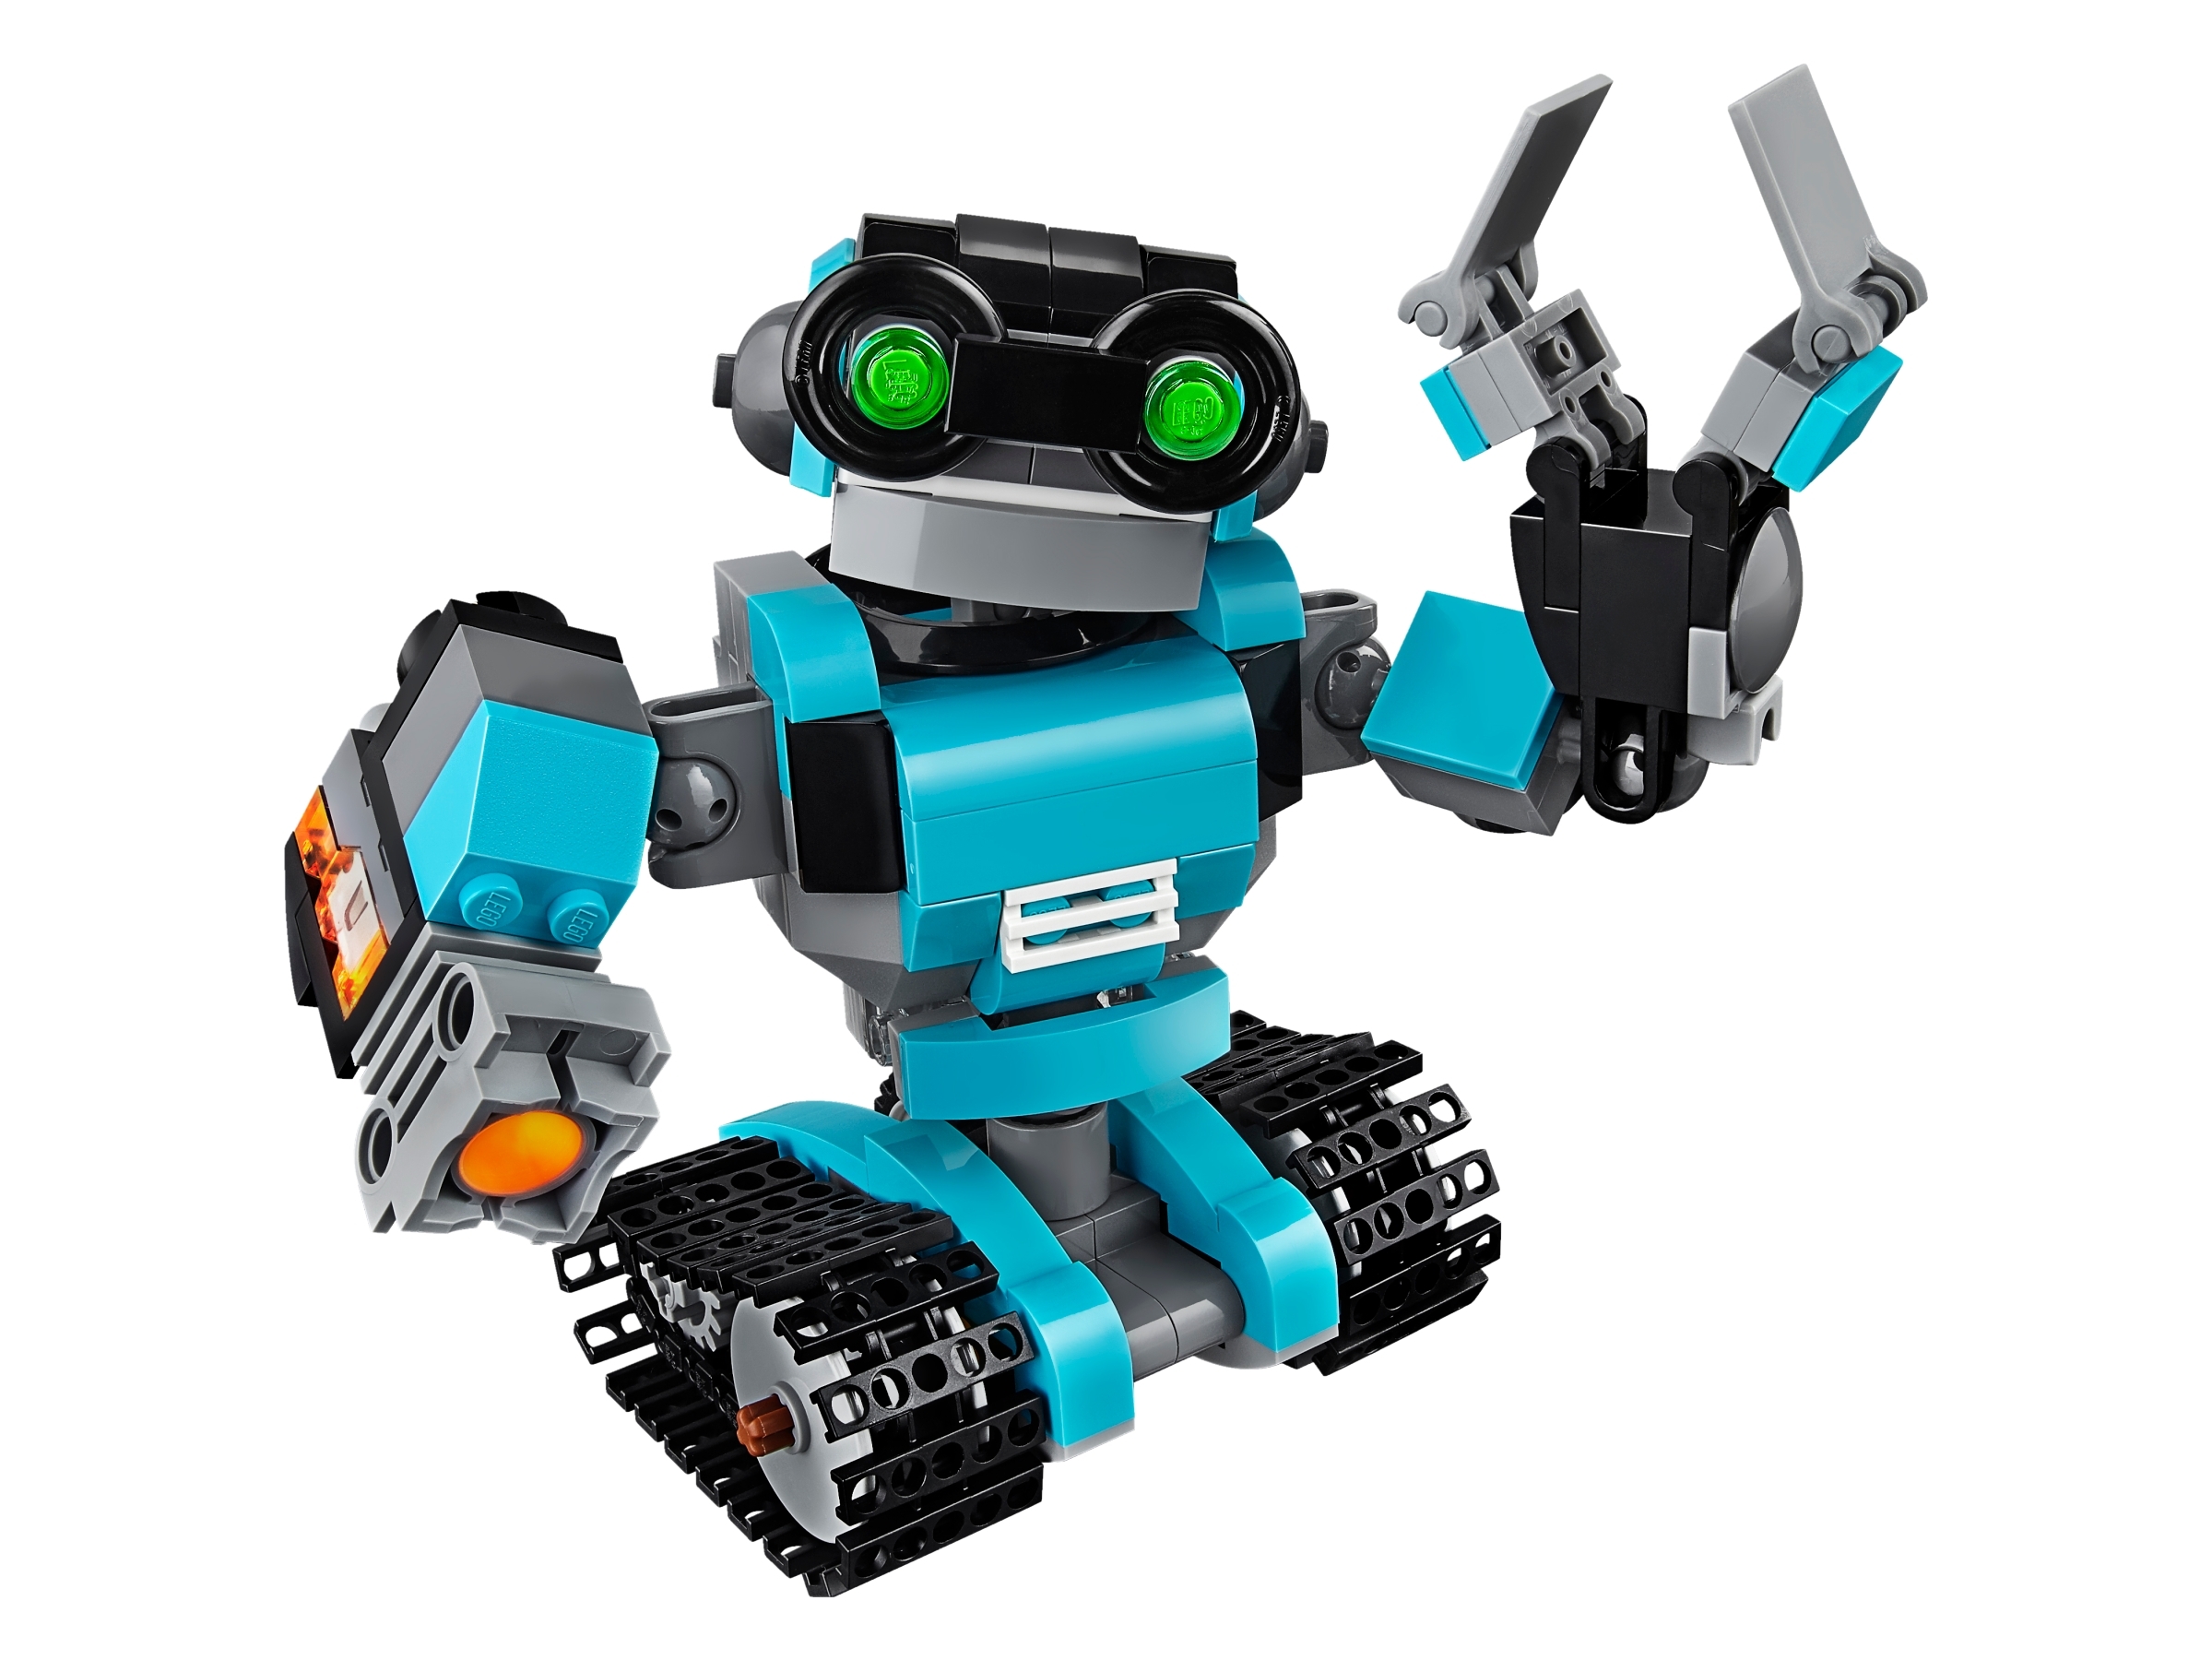 LEGO Creator Robo Explorer 31062 Robot Toy 